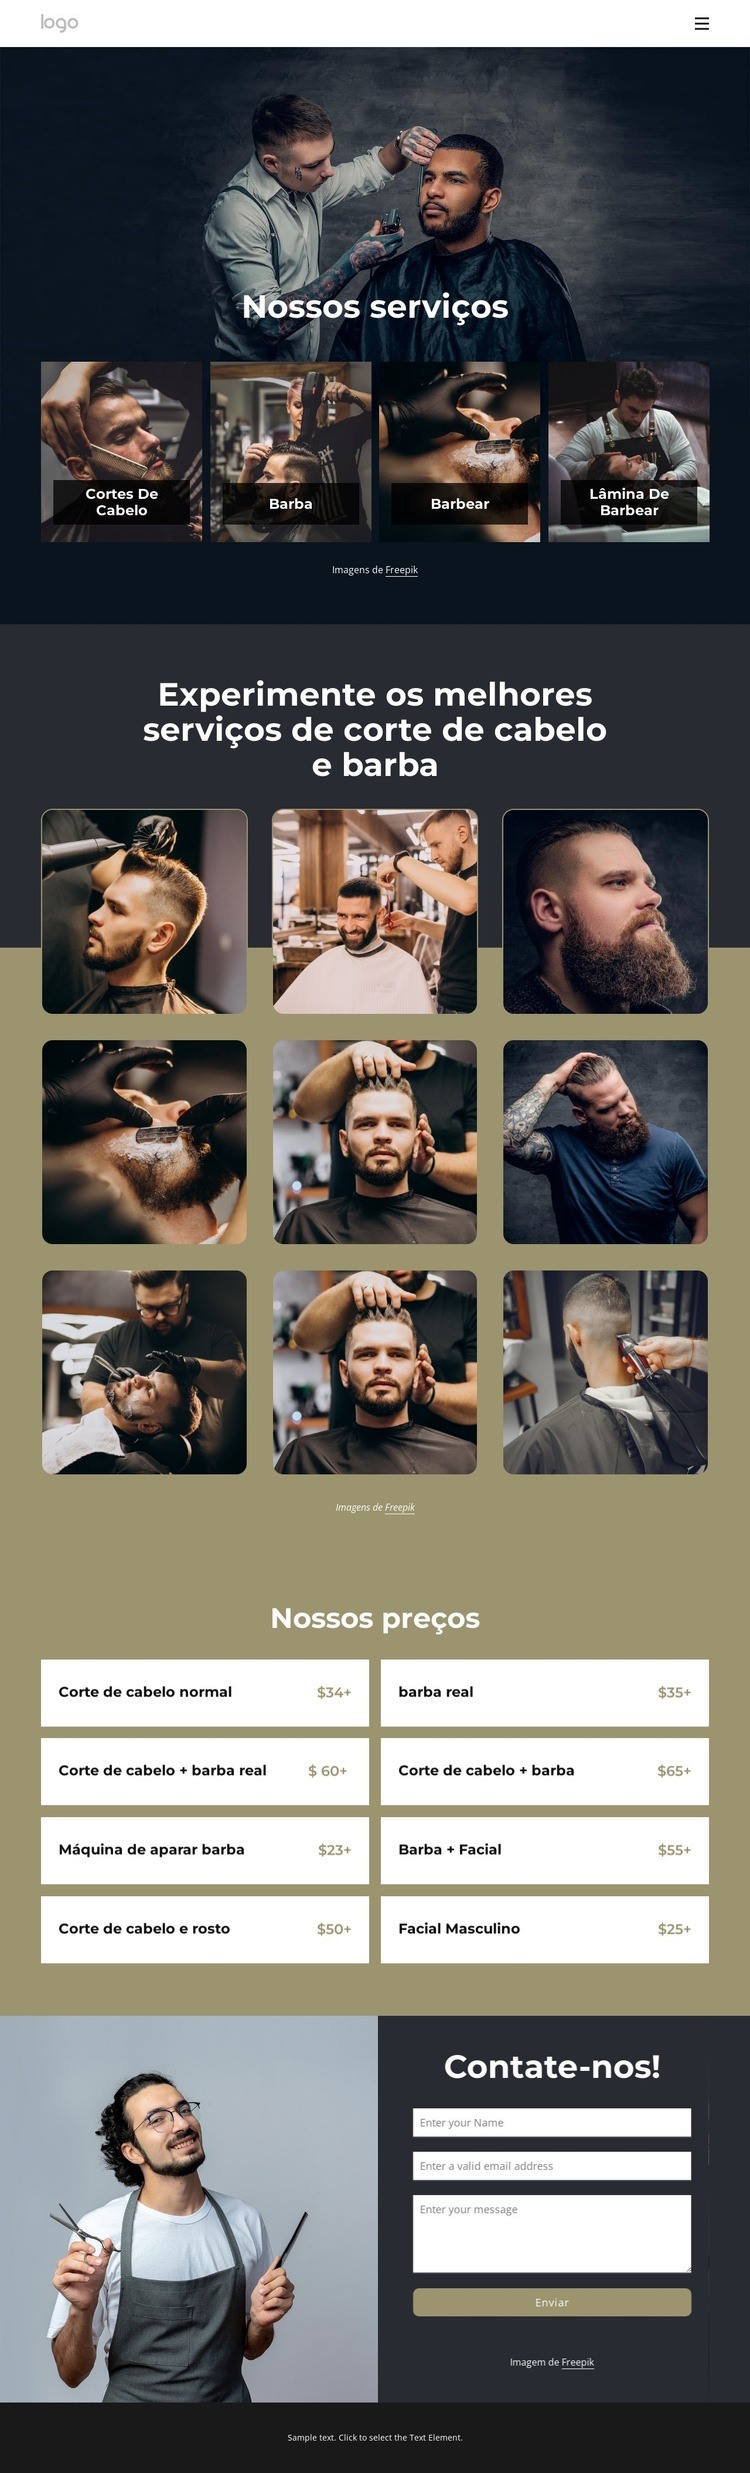 Os melhores serviços de corte de cabelo e barba Design do site